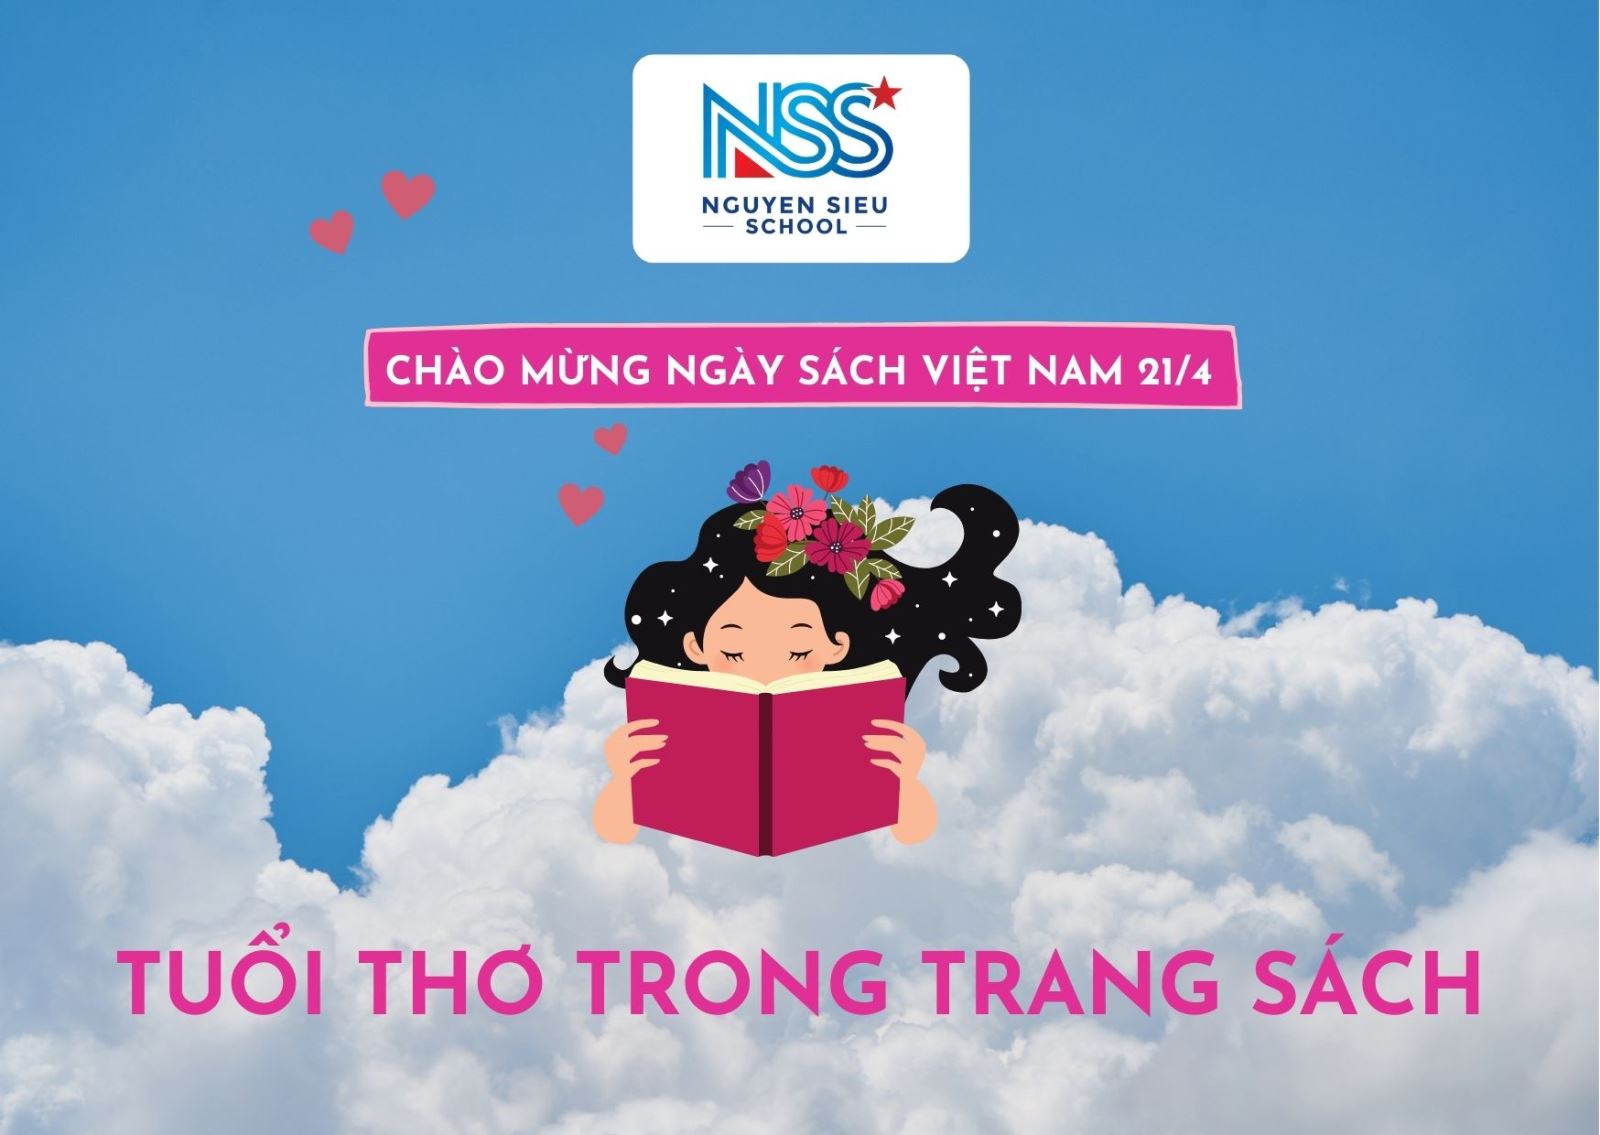 Trường Nguyễn Siêu - Trường Nguyễn Siêu là một trong những trường học tốt nhất tại Việt Nam, đem lại cho học sinh một môi trường học tập chuyên nghiệp và đầy thử thách. Hãy tham quan trường này để cảm nhận được không khí học tập sôi động và tiềm năng của các bạn trẻ.